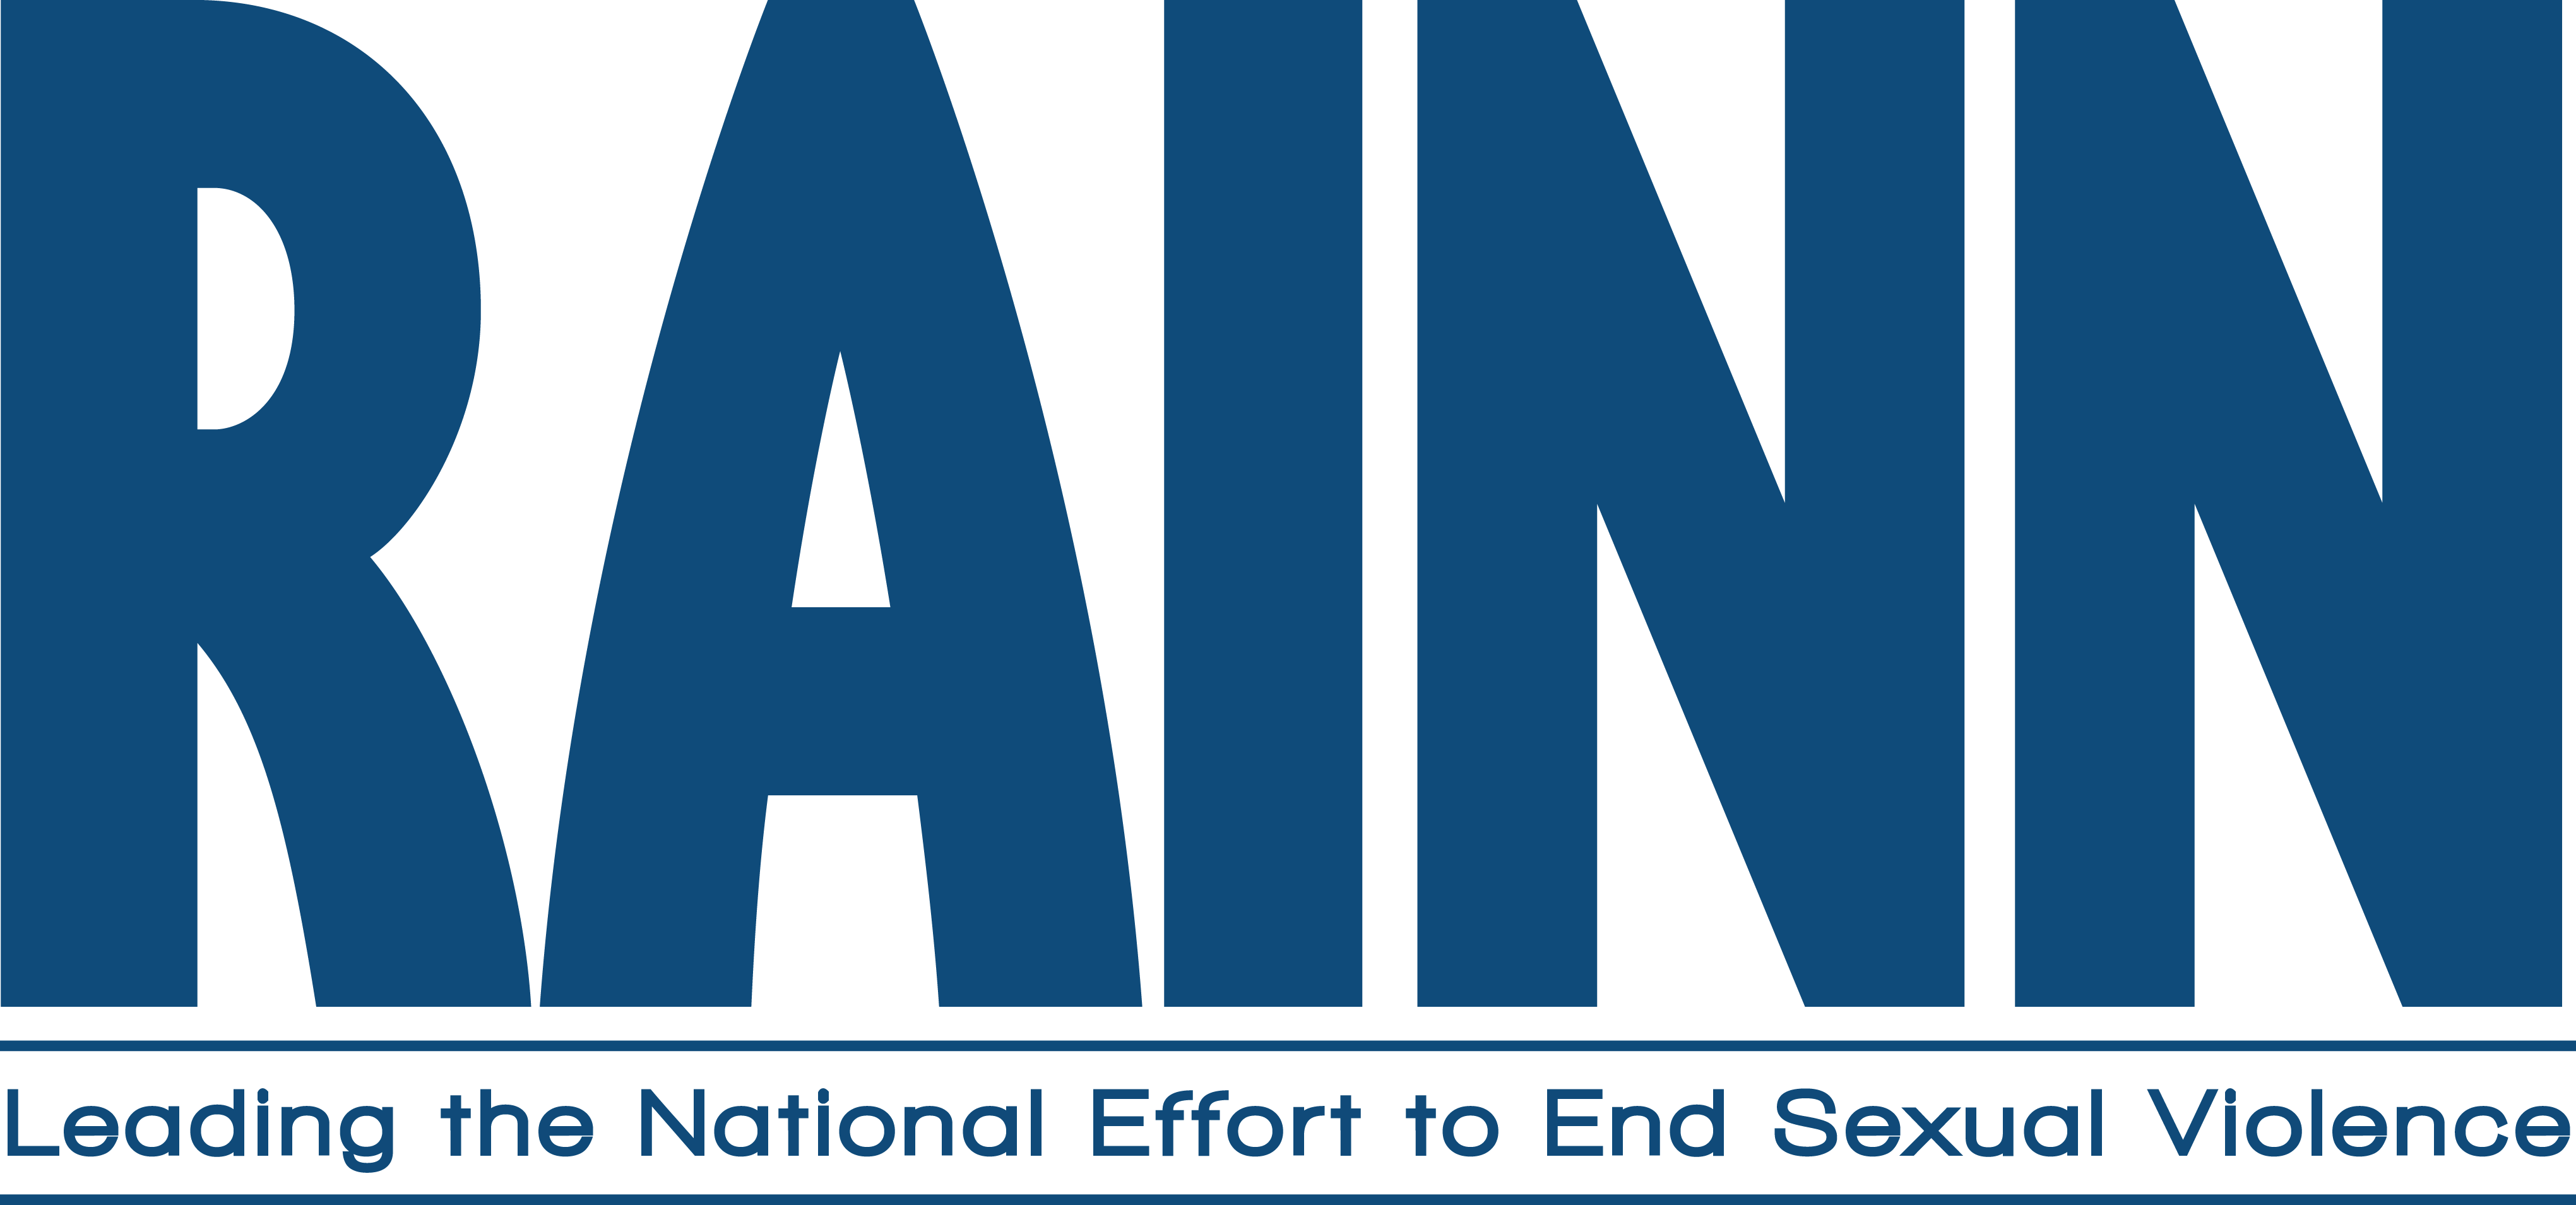 RAINN lidera el esfuerzo nacional para acabar con la violencia sexual Logotipo oficial